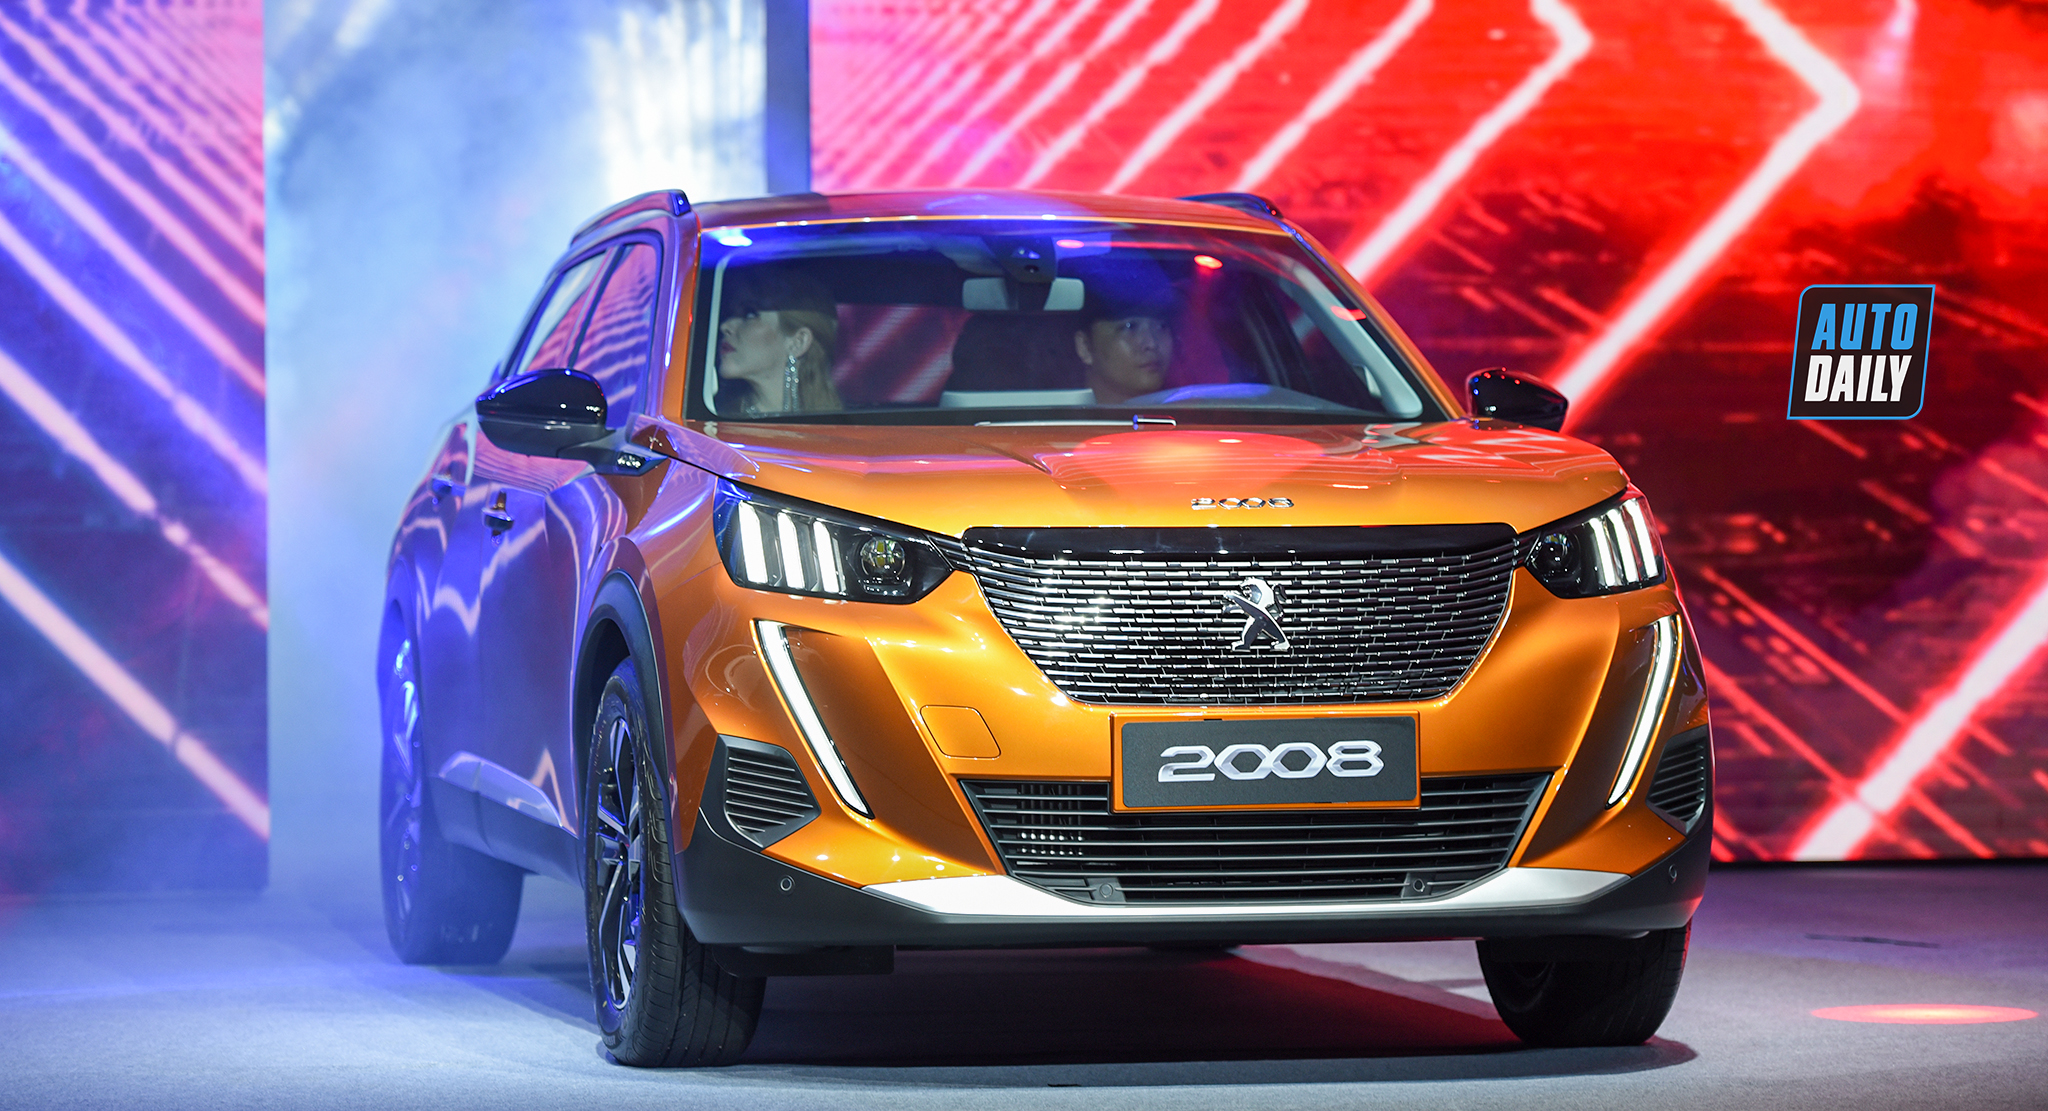 Peugeot 2008 2021 chính thức ra mắt tại Việt Nam, giá từ 739 triệu dsc-8392-copy.jpg